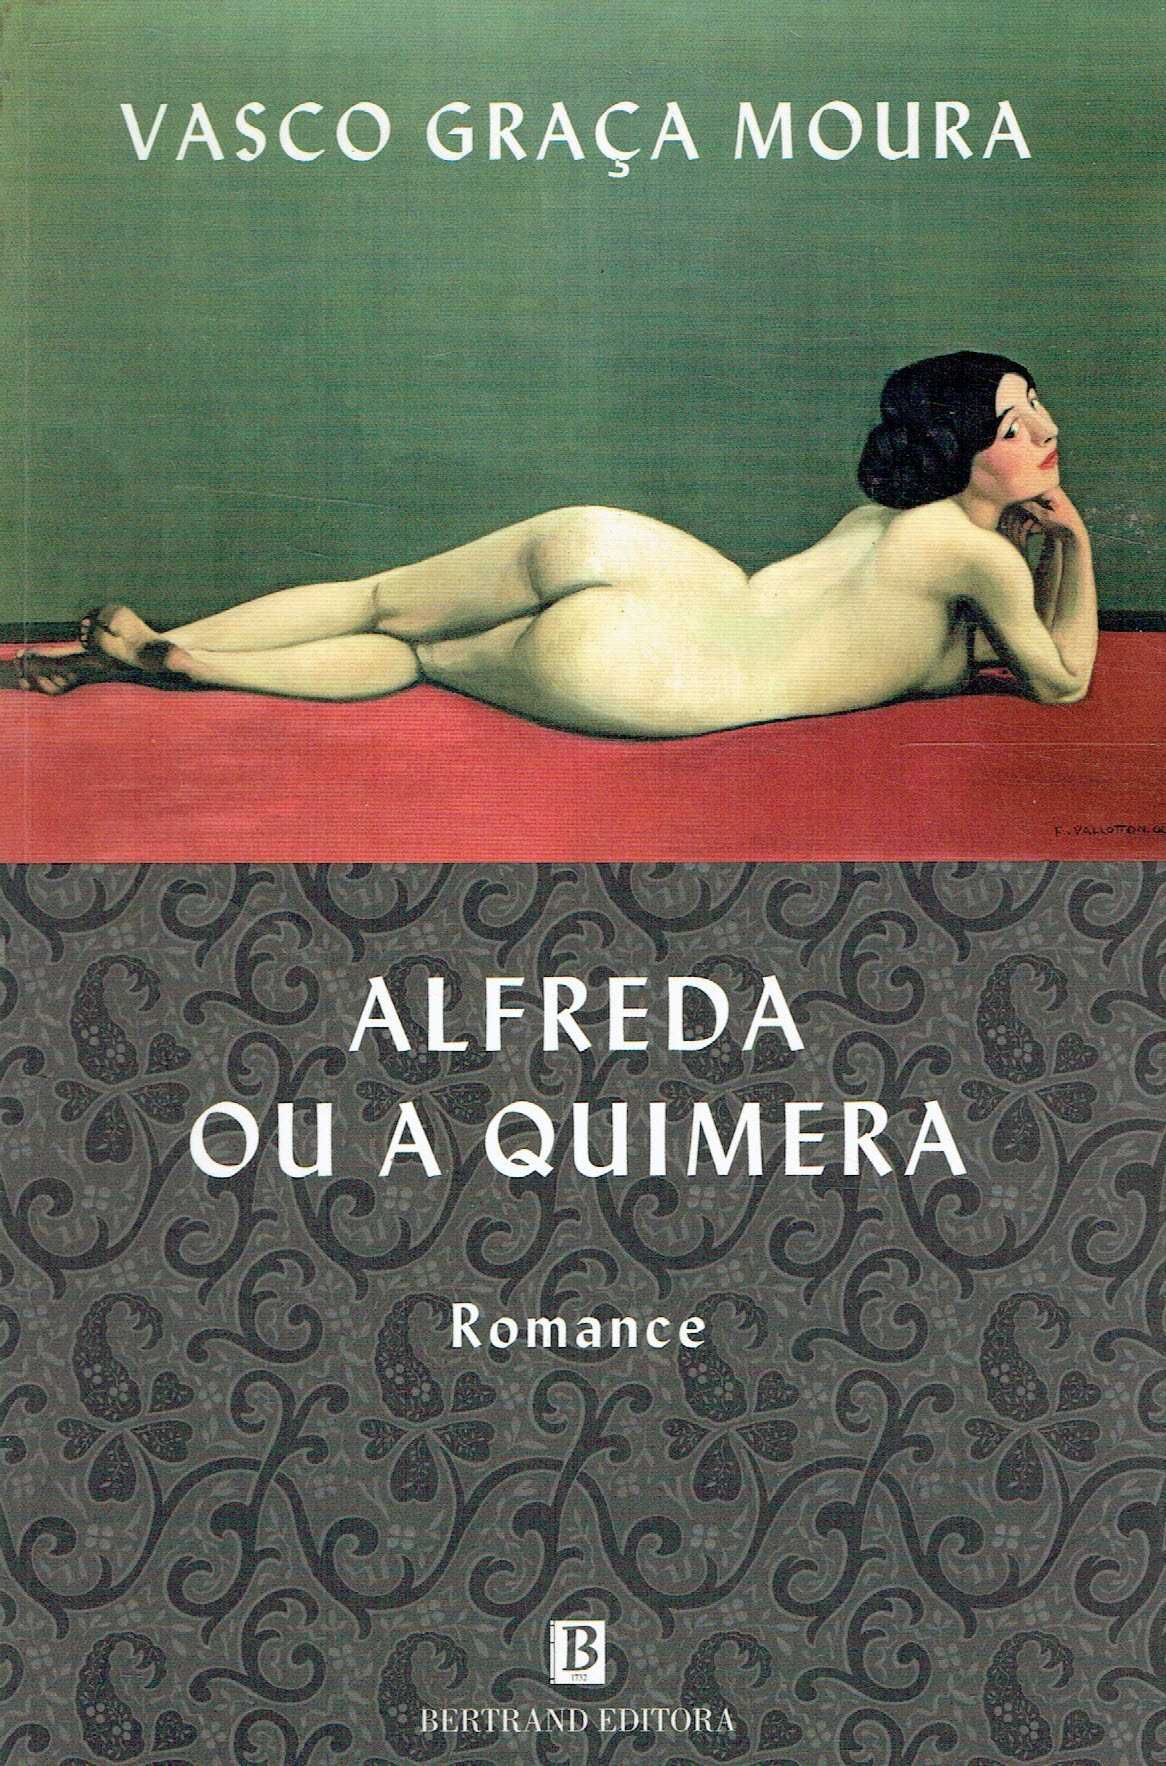 3907

Alfreda ou a Quimera
de Vasco Graça Moura